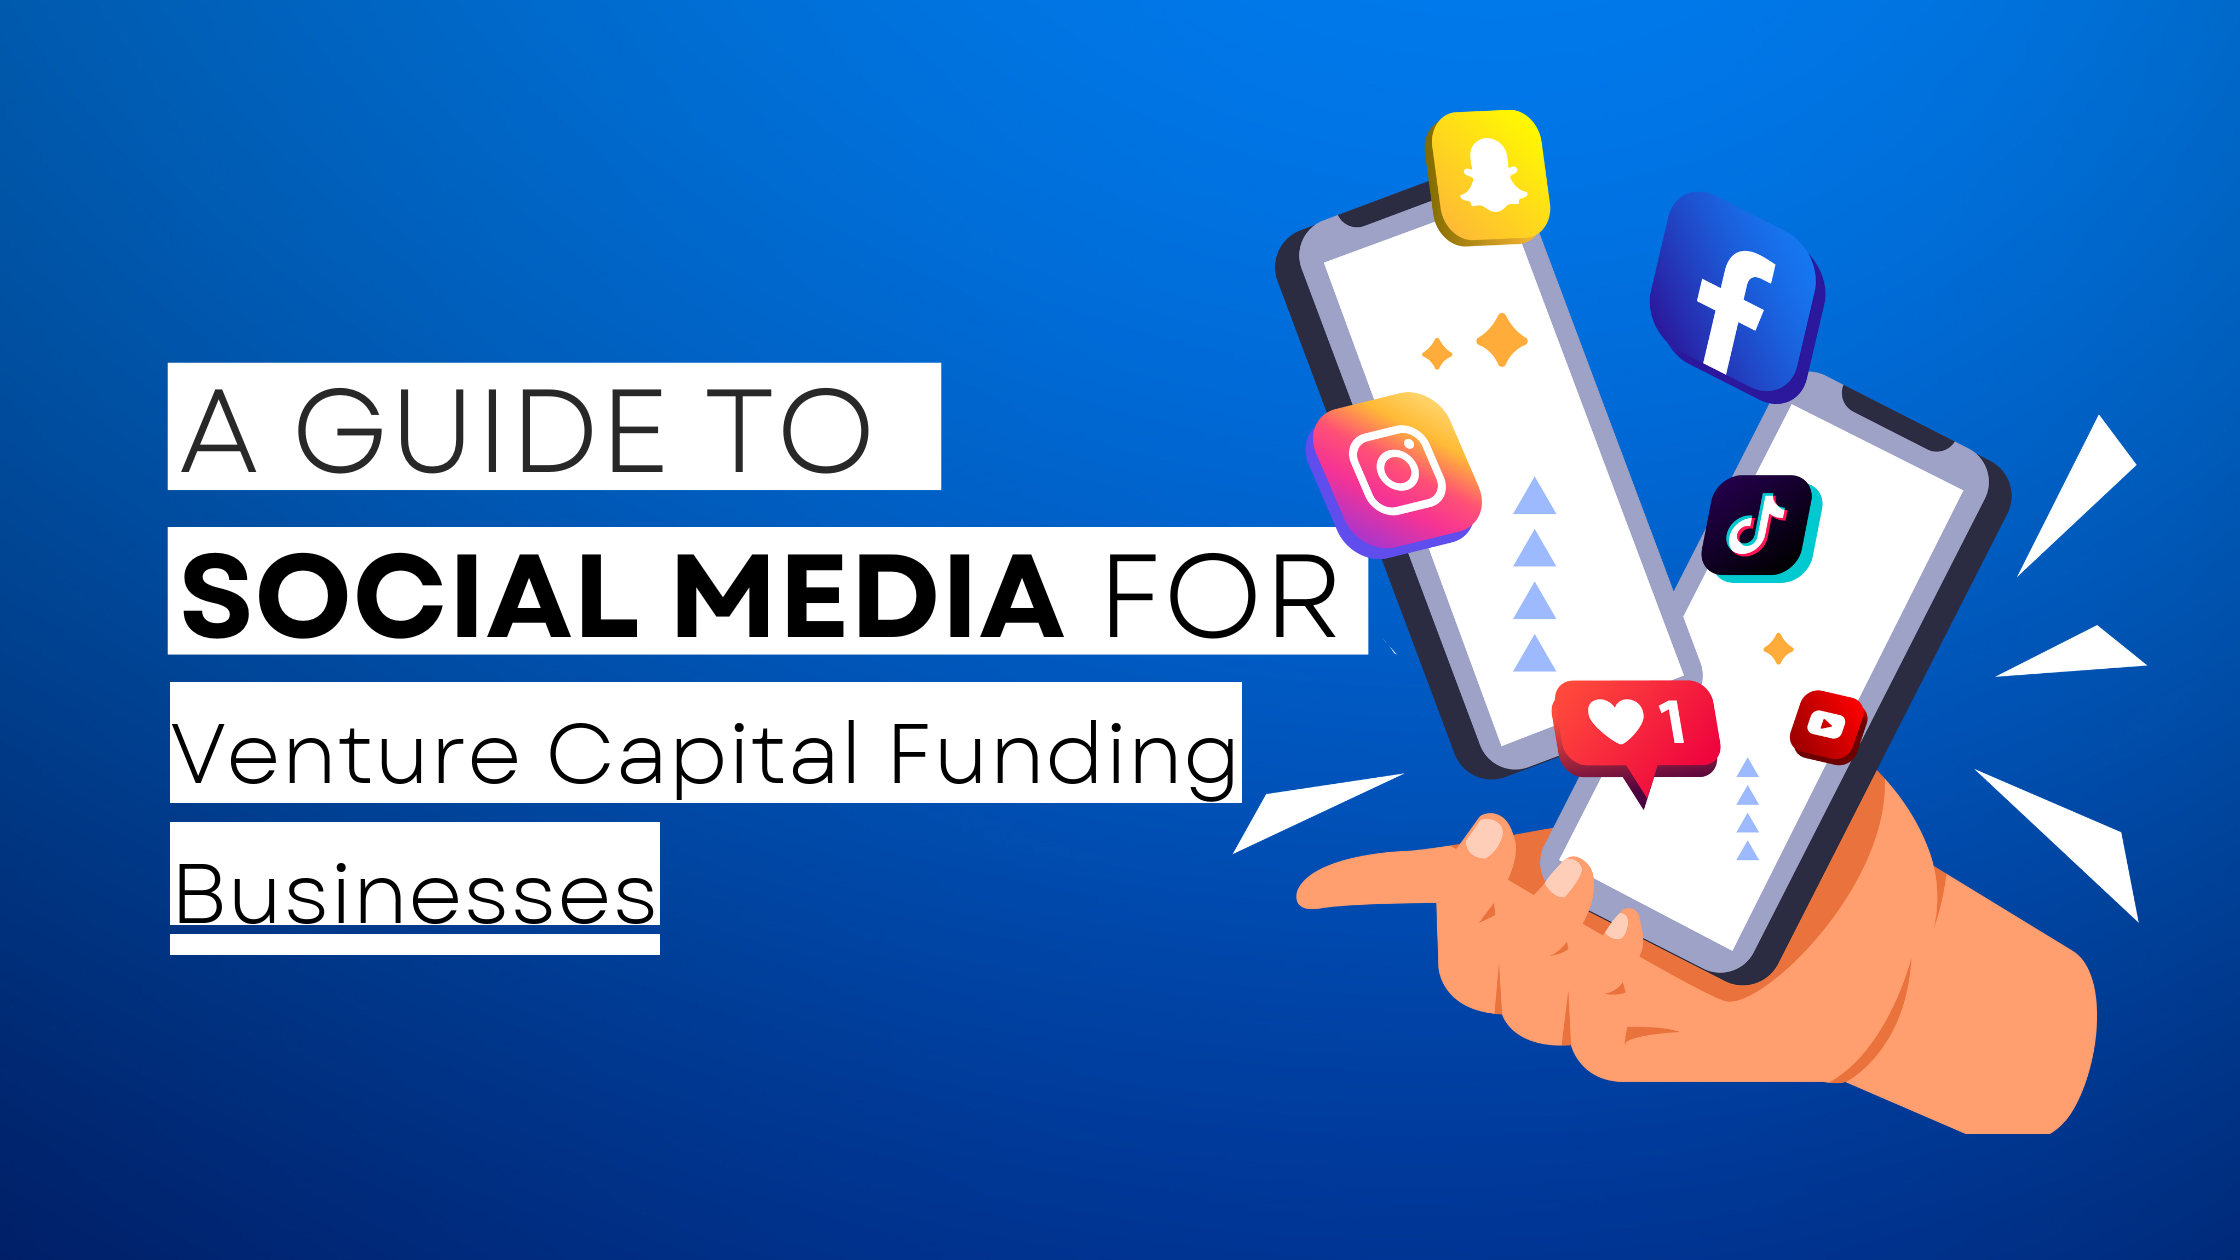 How to start Venture Capital Funding on social media